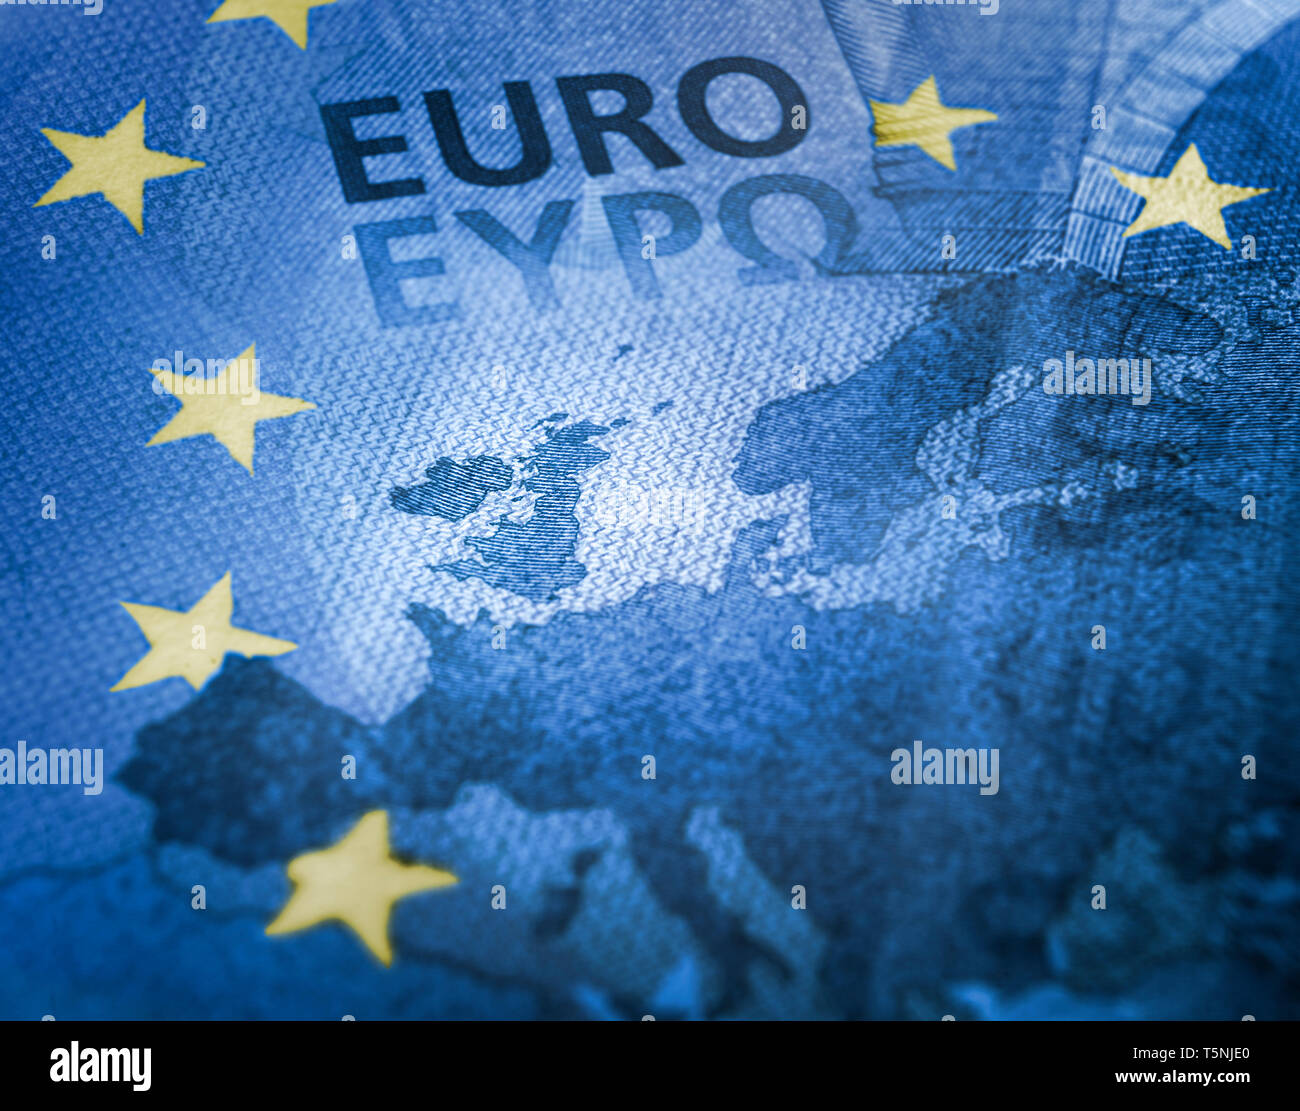 Concetto Brexit. Unfocused Euro bill close up dettaglio della mappa dell'Europa con il focus sulla Gran Bretagna. Unione Europea colori bandiera con stelle gialle Foto Stock